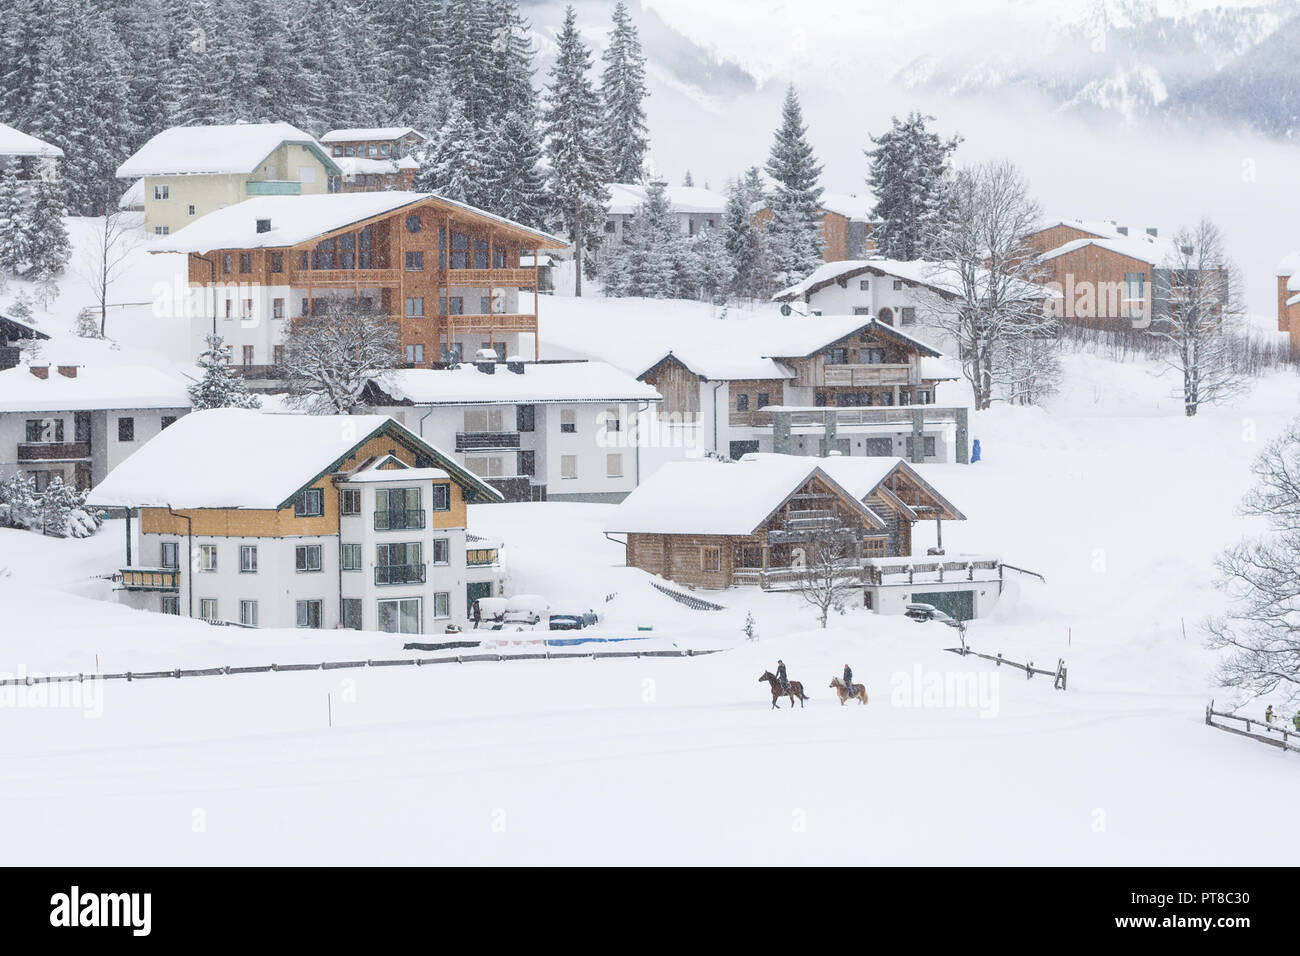 Austrian coperta di neve in inverno village Foto Stock